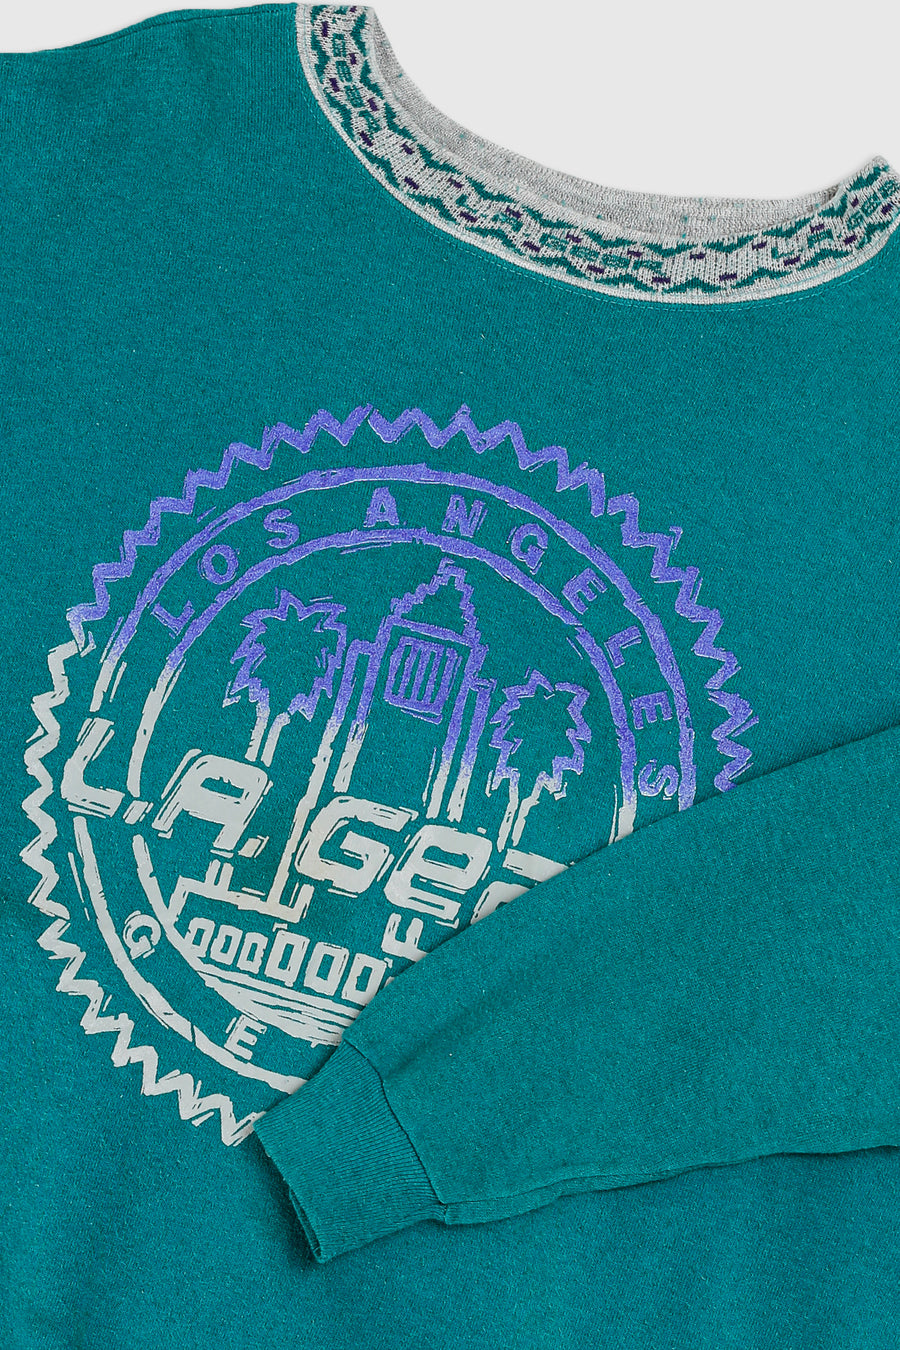 Vintage Los Angeles Sweatshirt - L